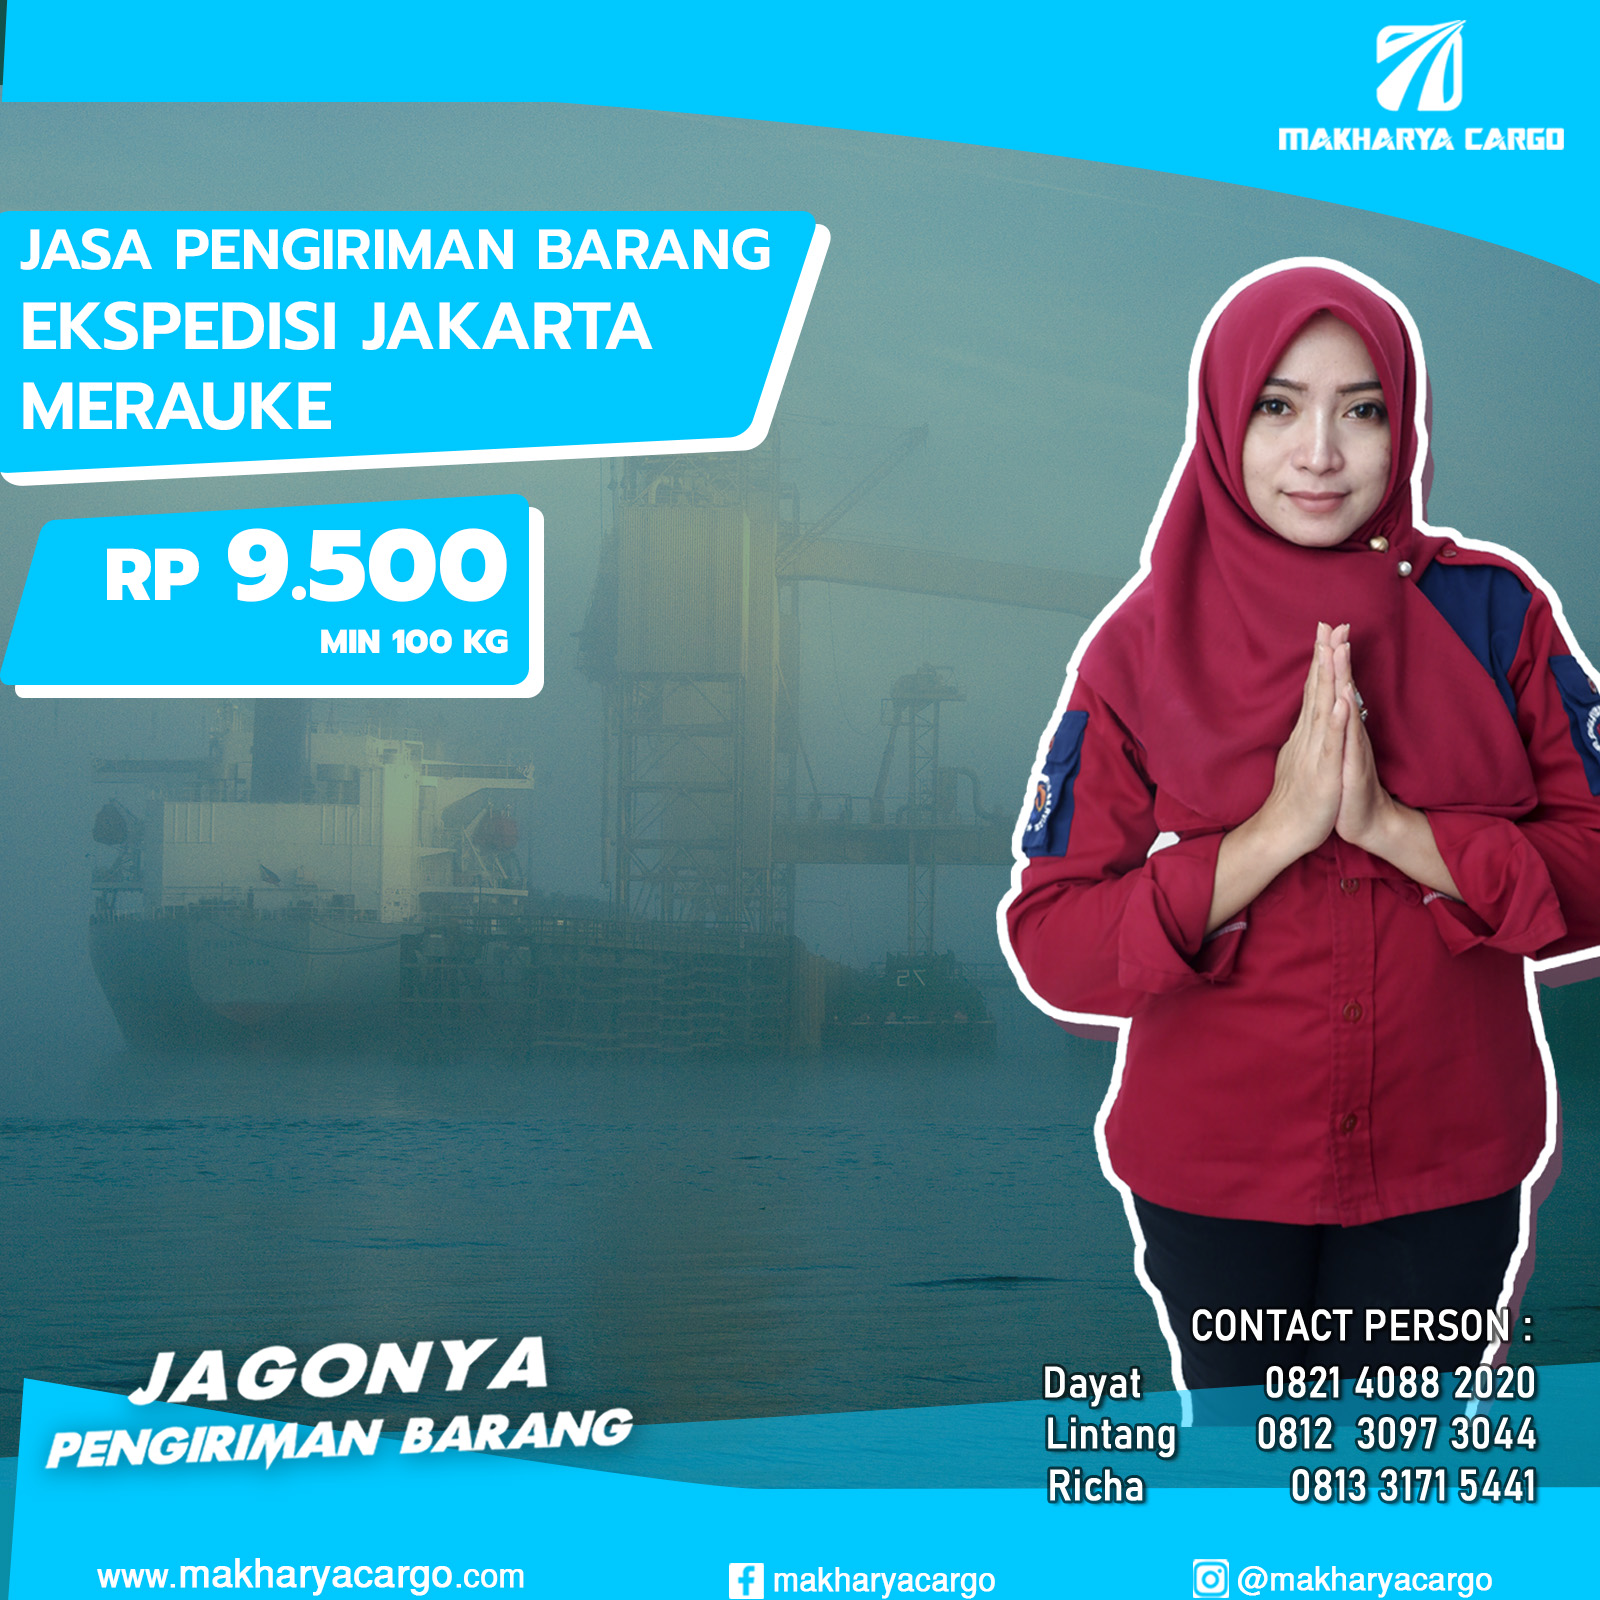 Ekspedisi Jakarta Merauke